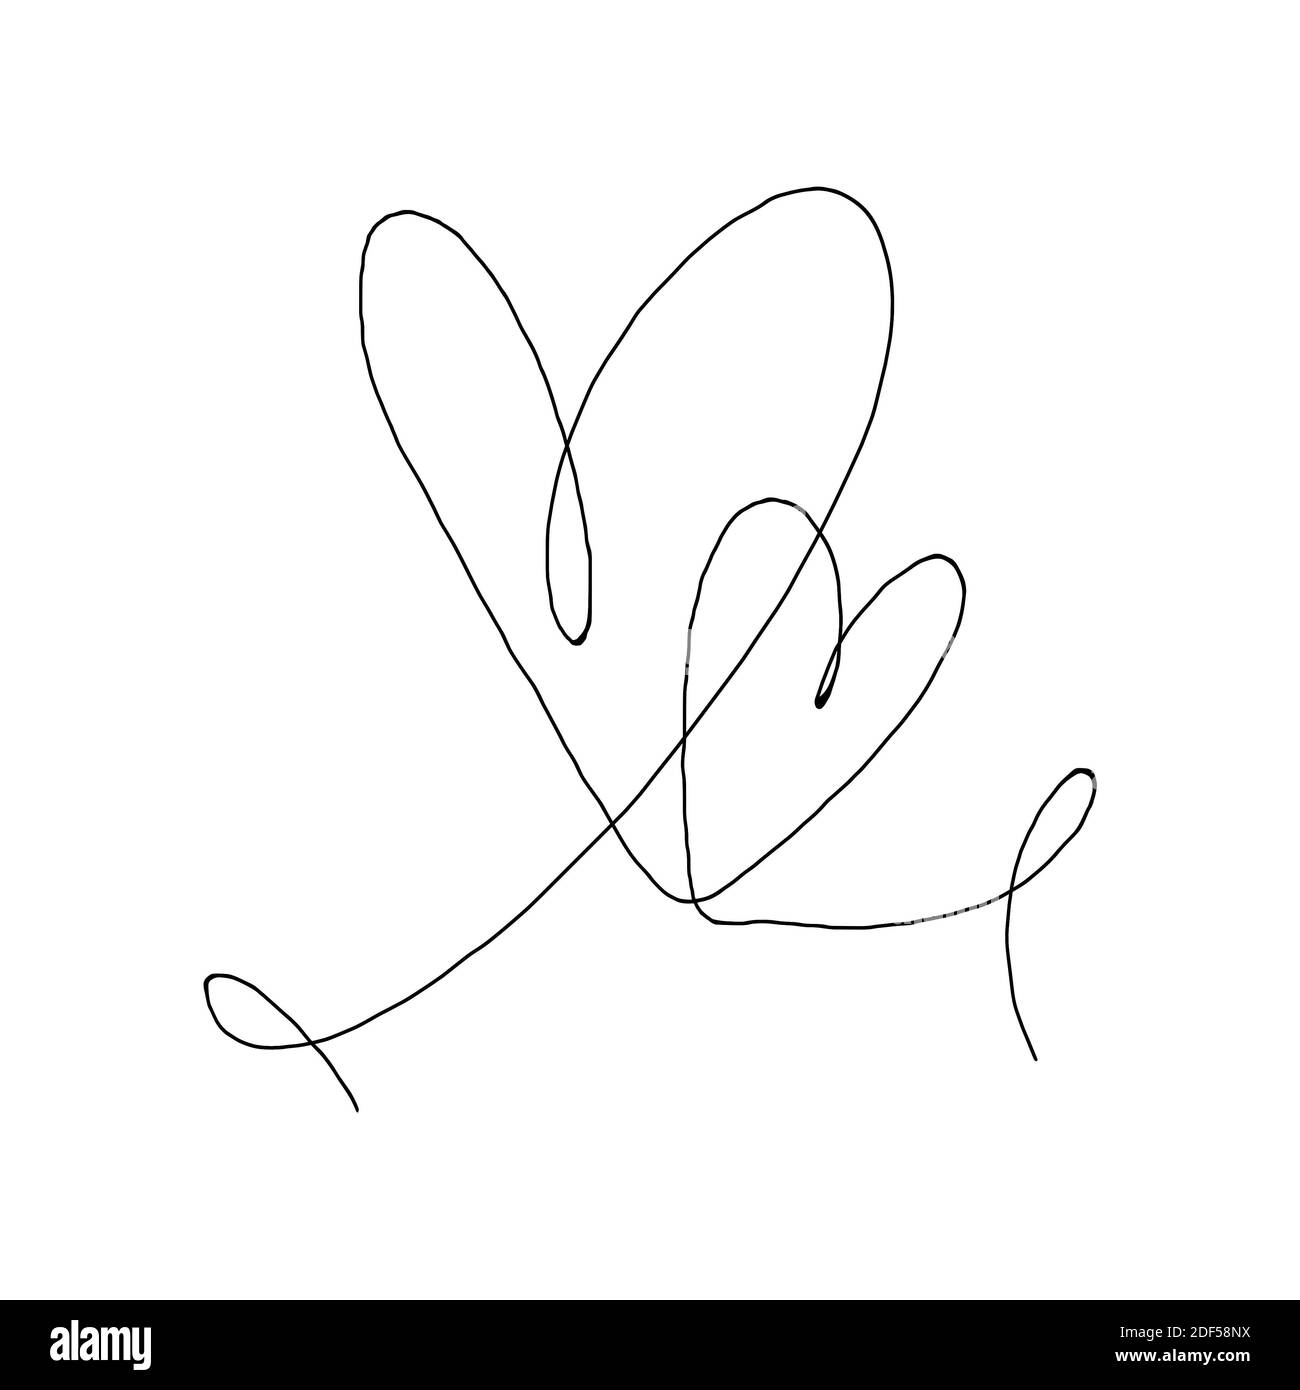 Deux coeurs dessinés à la main avec un contour noir isolé sur fond blanc. Ligne continue sous forme de cœur. Mise en plan d'une ligne. Modèle pour t-shirt, poste Banque D'Images